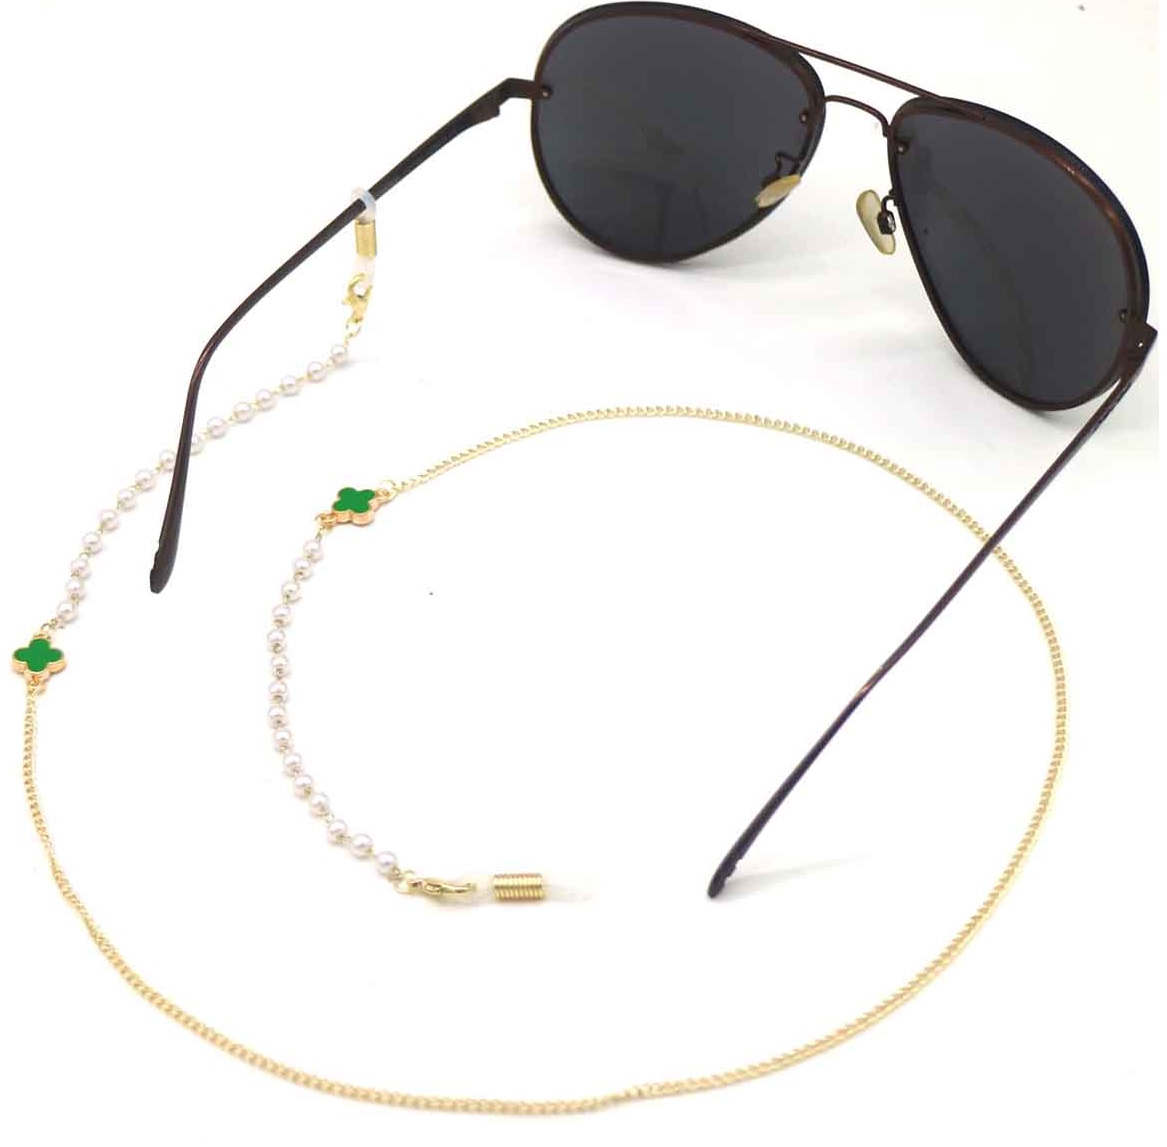 A-D15.3 GL004-054-5 Sunglass Chain Pearls Clover Green